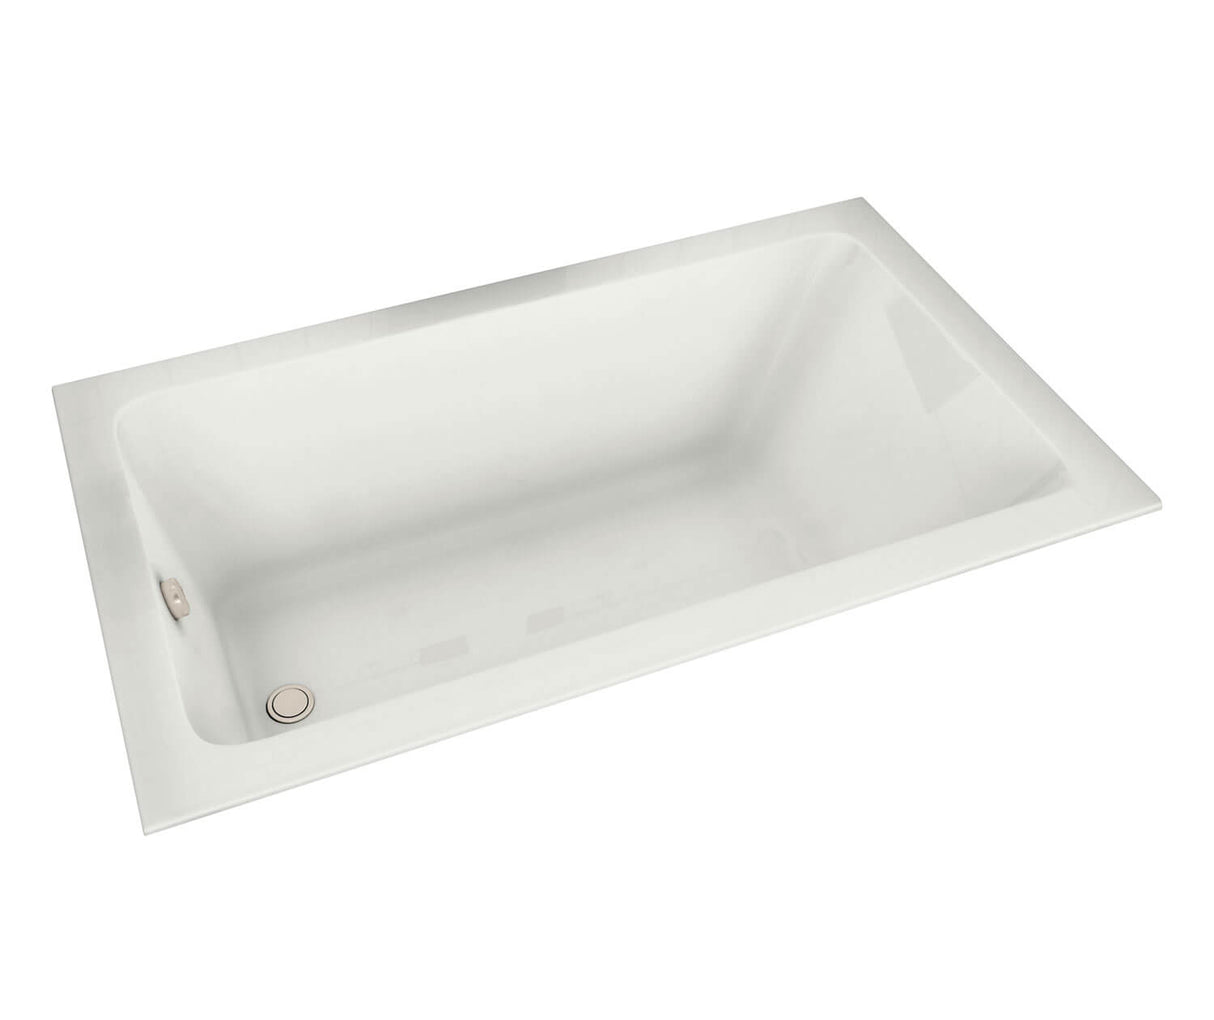 MAAX 101458-003-001-100 Pose 6632 Acrylic Drop-in End Drain Whirlpool Bathtub in White